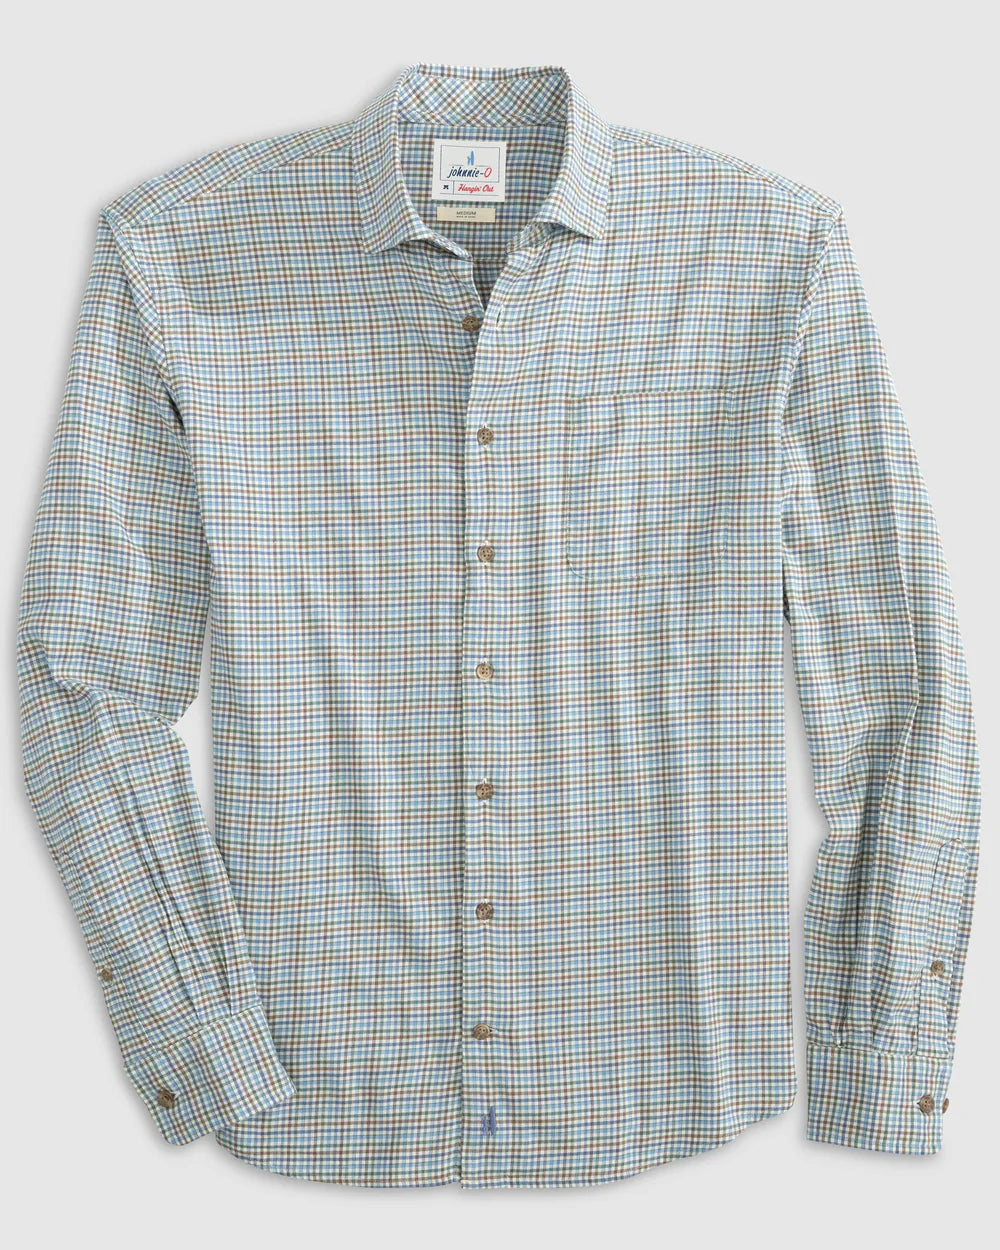 Metz Hangin' Out Button-Up Shirt